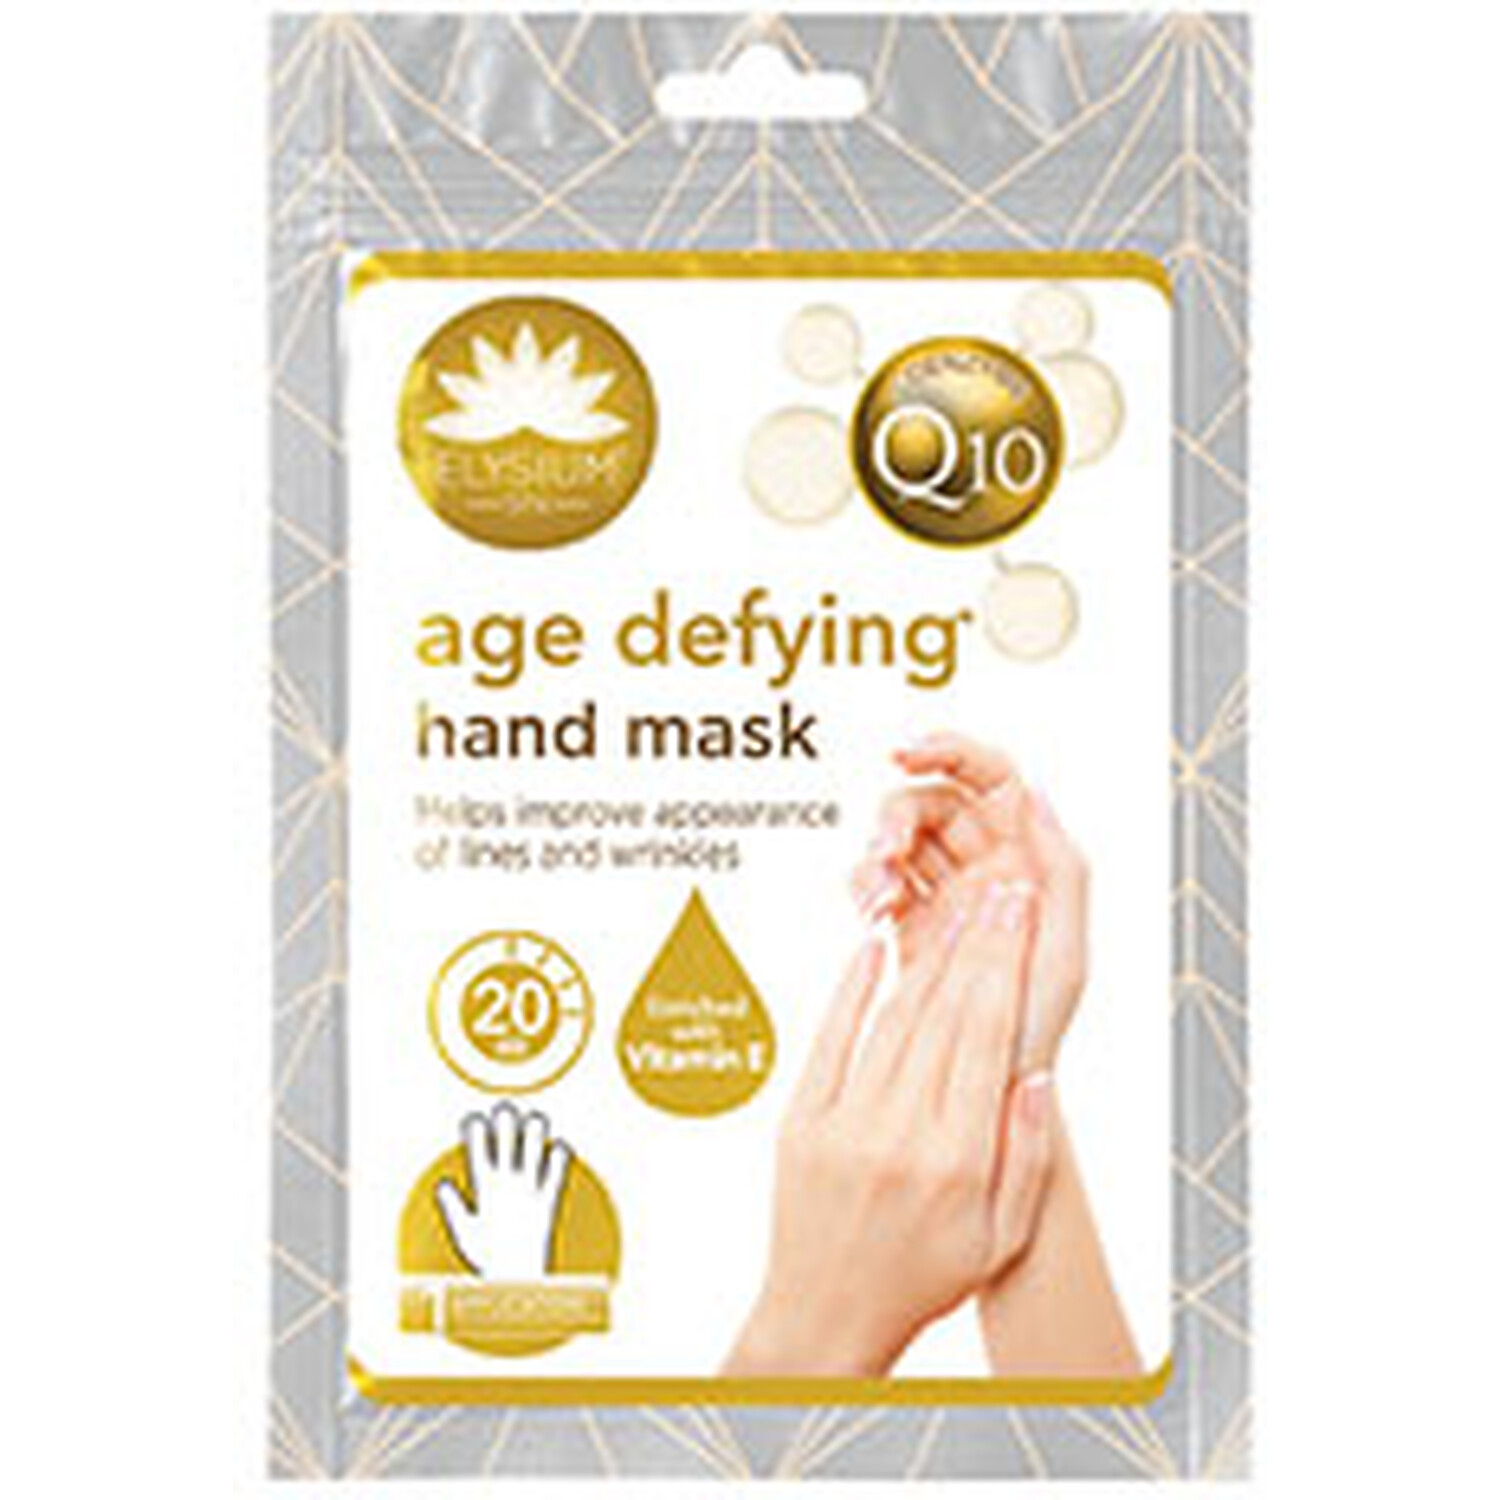 Elysium Q10 Age Defying Hand Mask - Gold Image